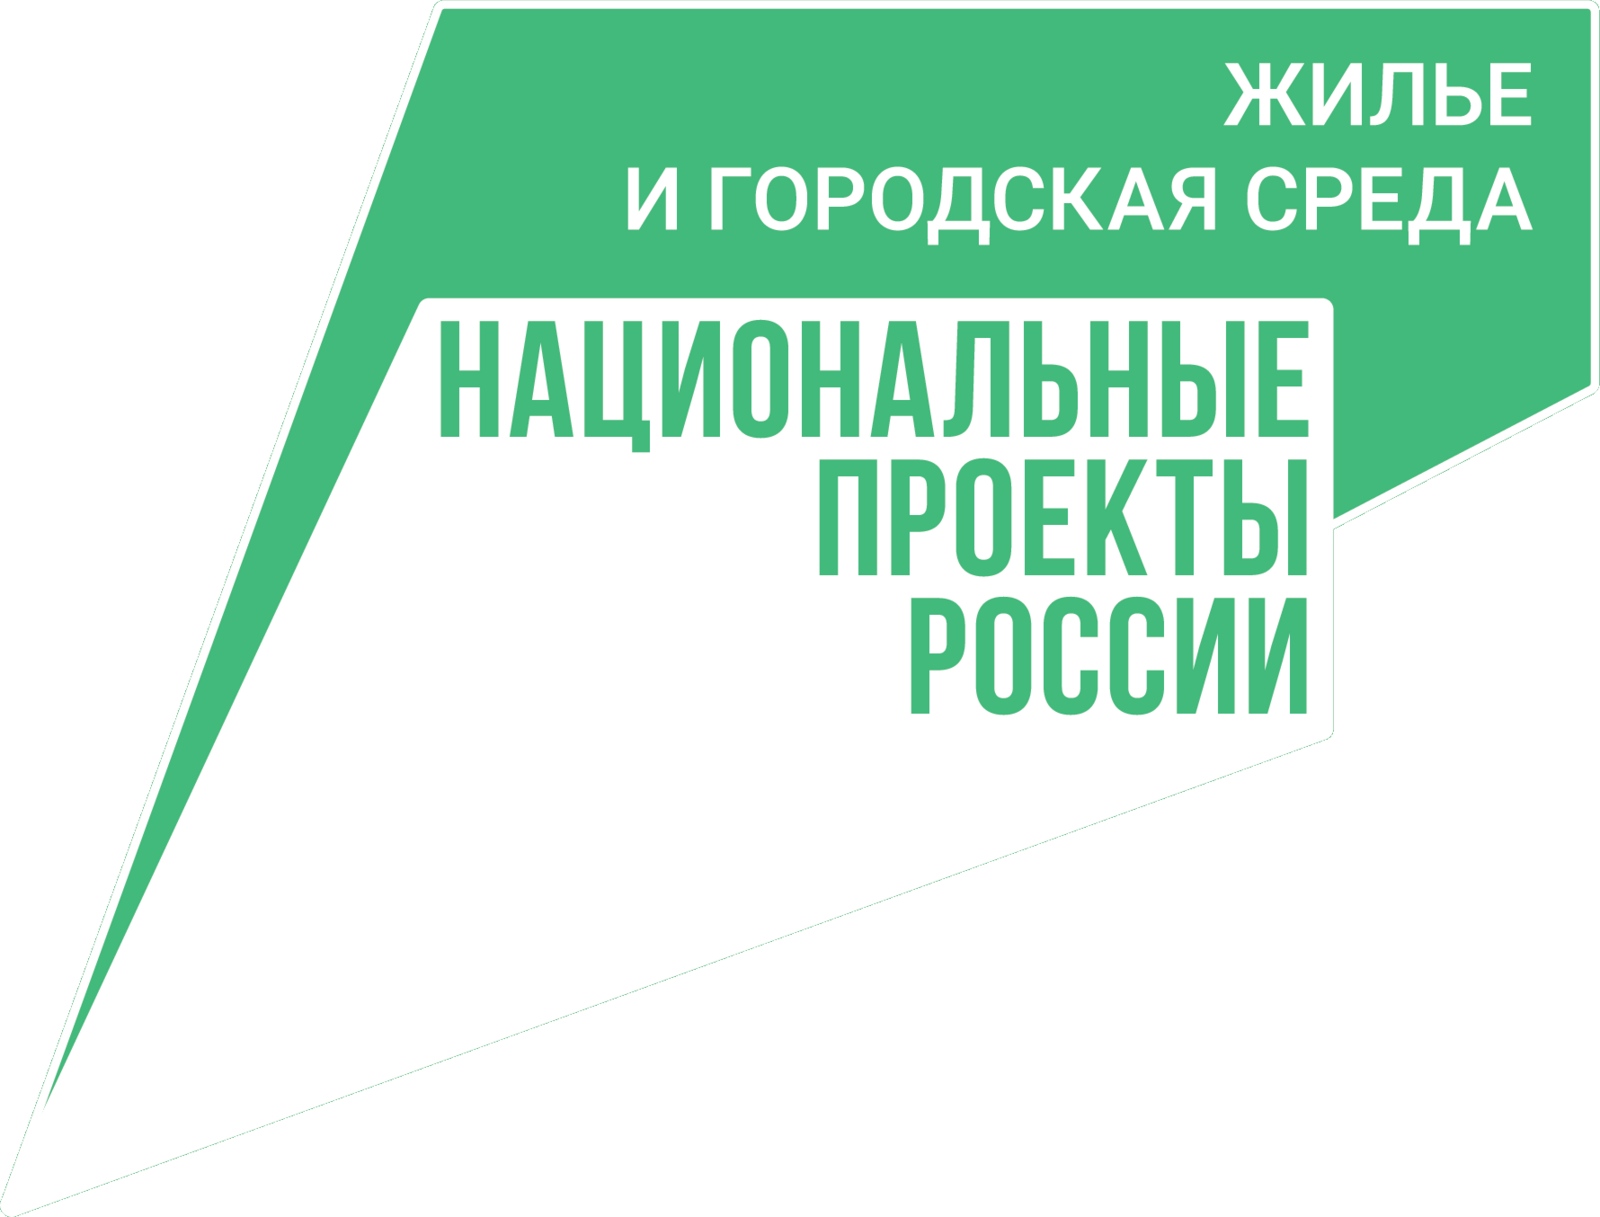 Башкортостан вошел в тройку лидеров по реализации нацпроекта «Жилье и городская среда»